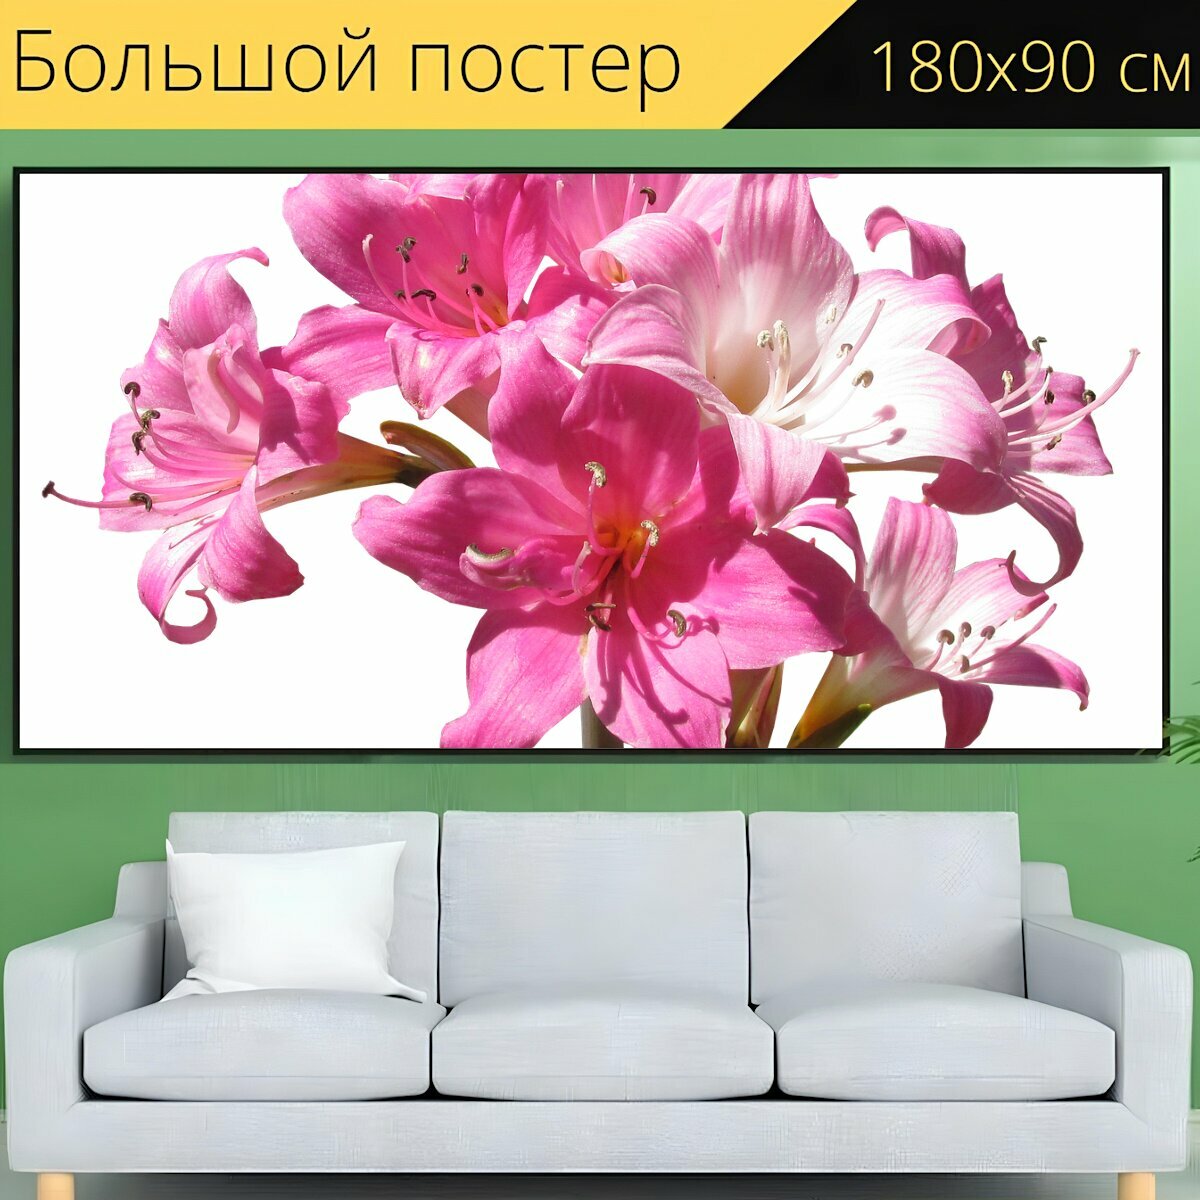 Большой постер "Белладонна, лили, цветы" 180 x 90 см. для интерьера